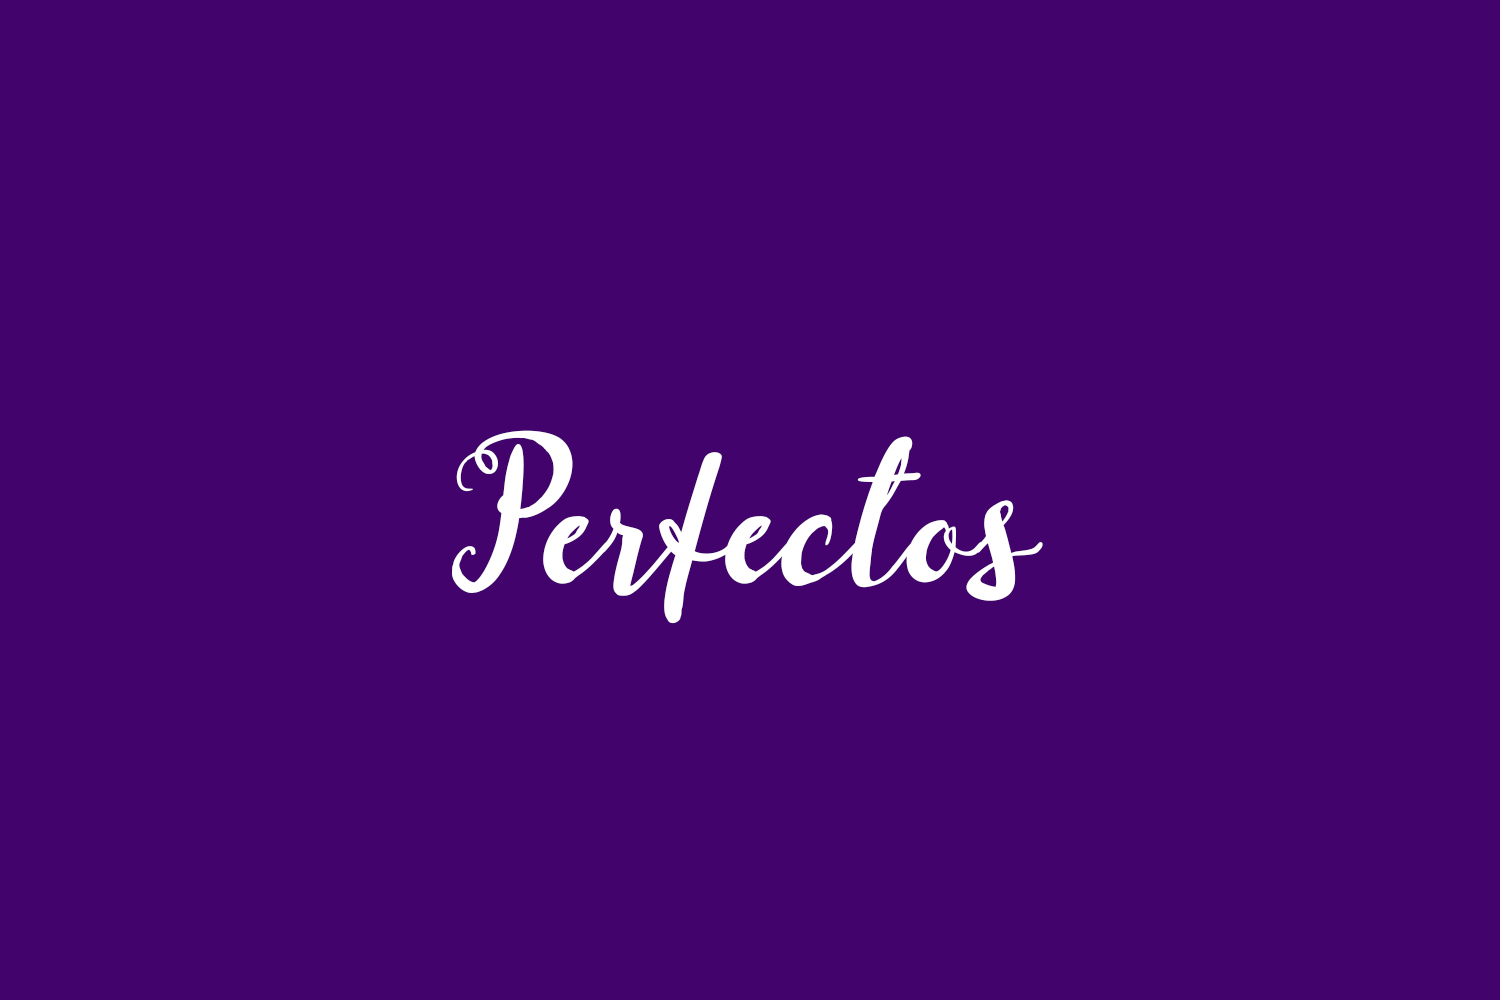 Perfectos Free Font